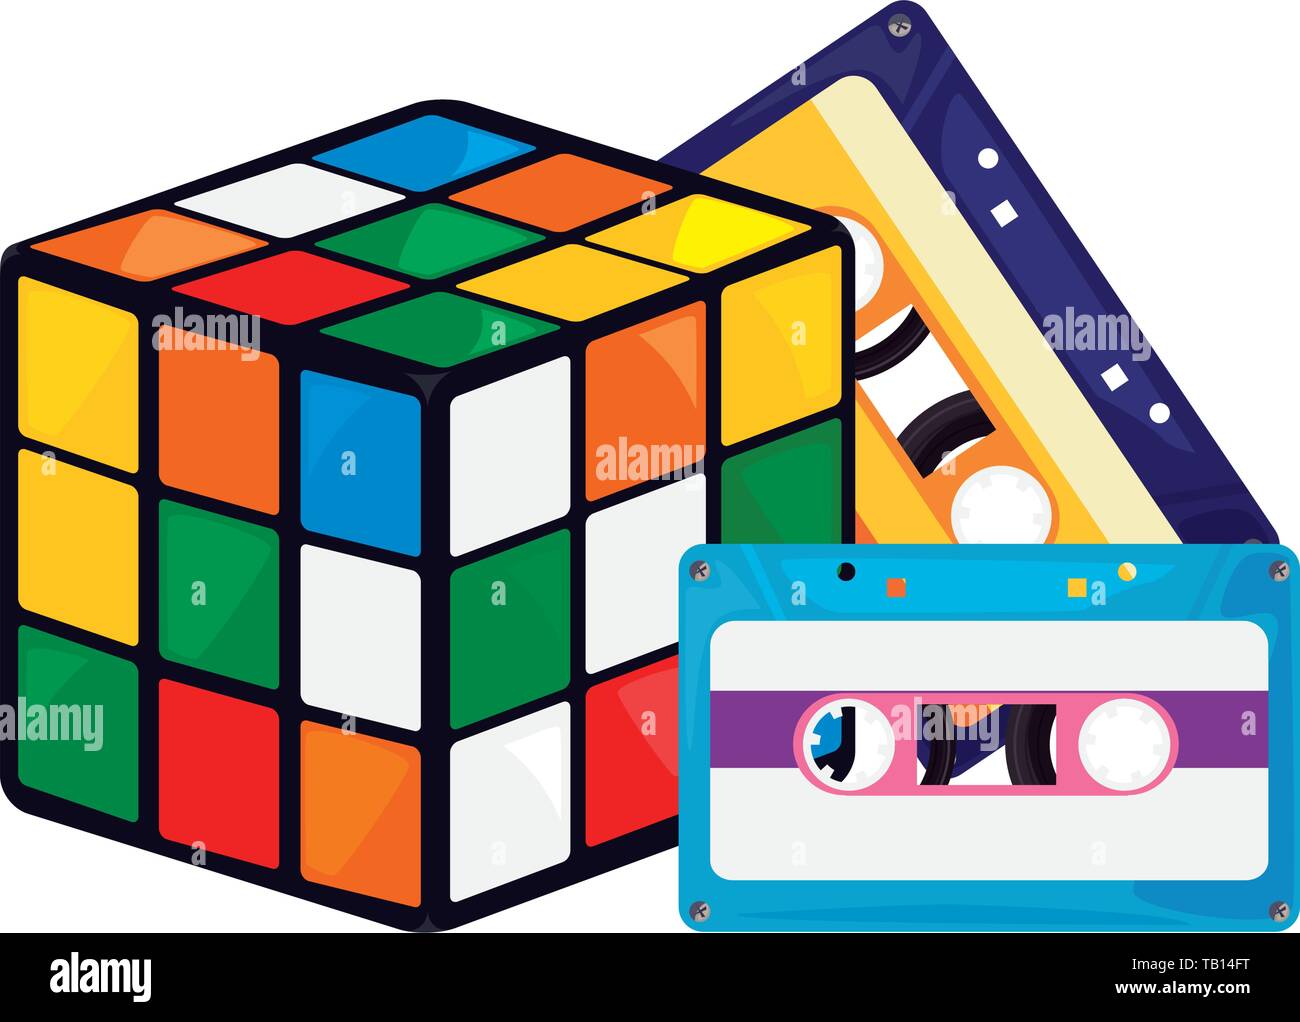 cube rubik cassette videotape beta retro 80s style vector illustration  Stock Vector Image & Art - Alamy